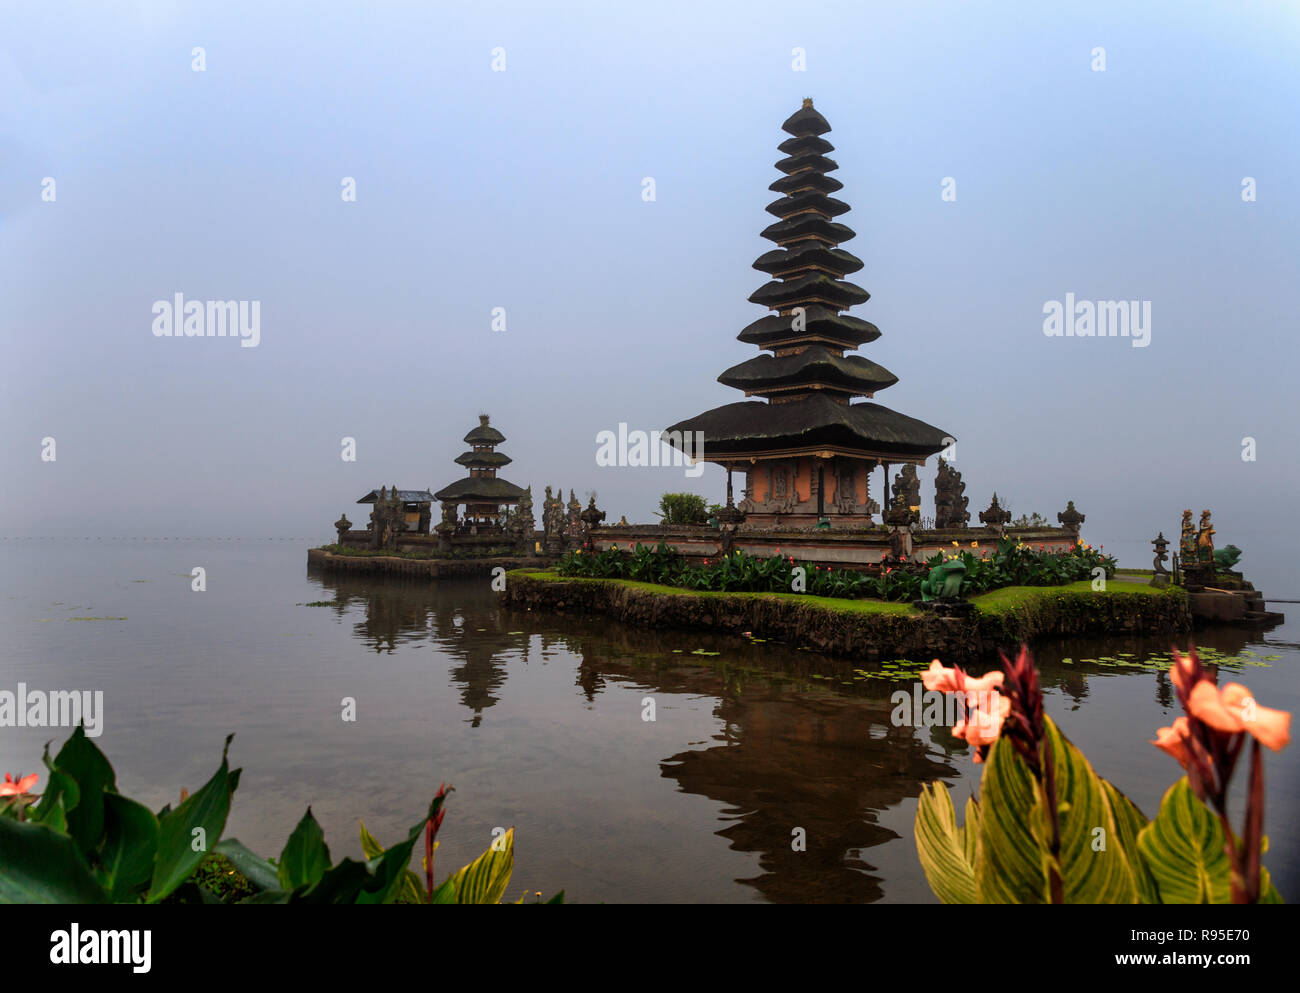 The Lake Temple - Bali, Ulun Danu temple, Stock Photo